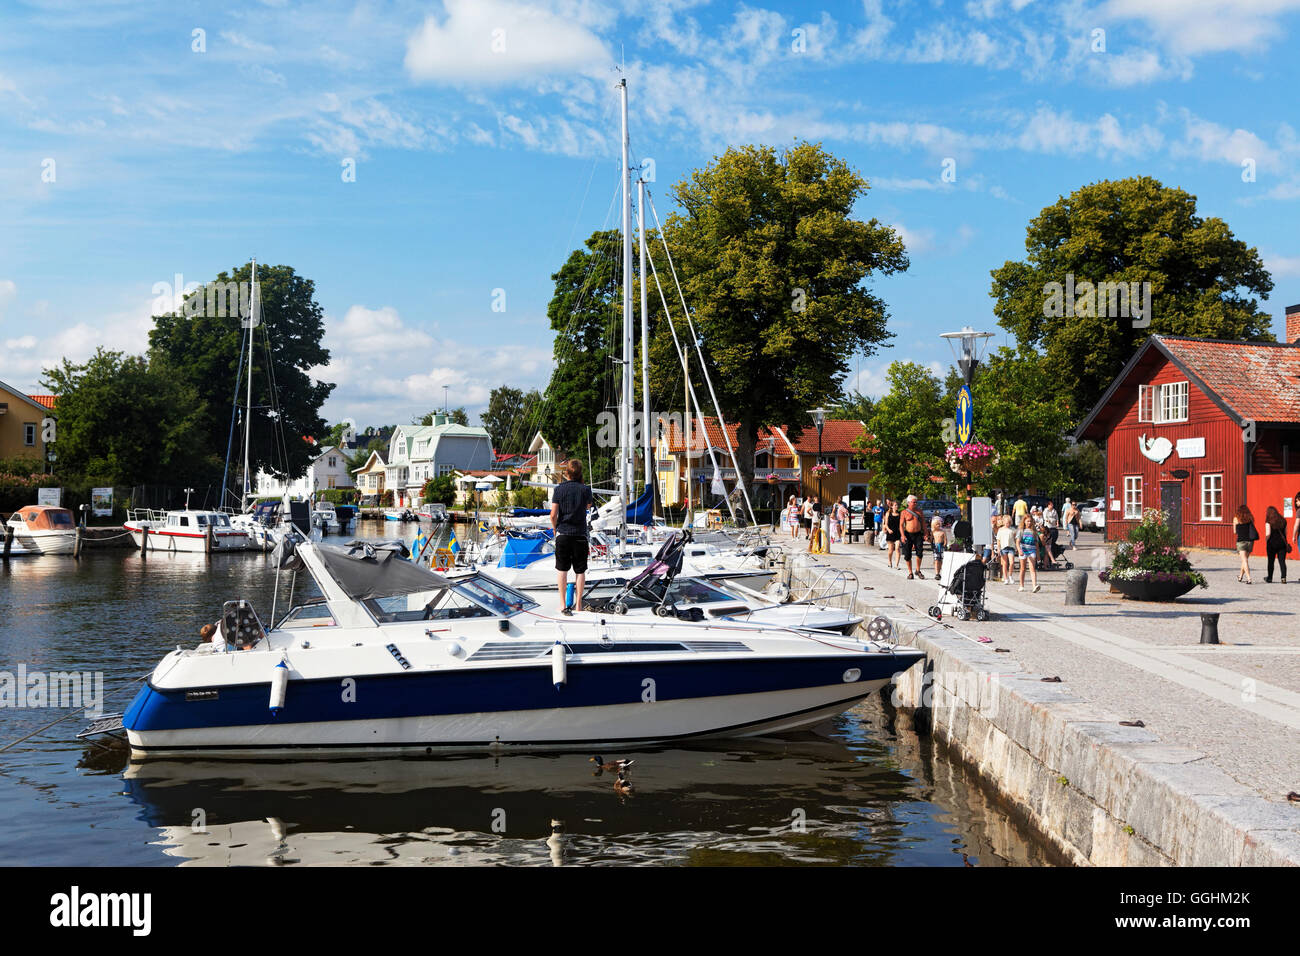 El puerto deportivo y el paseo, Trosa, Suecia Foto de stock